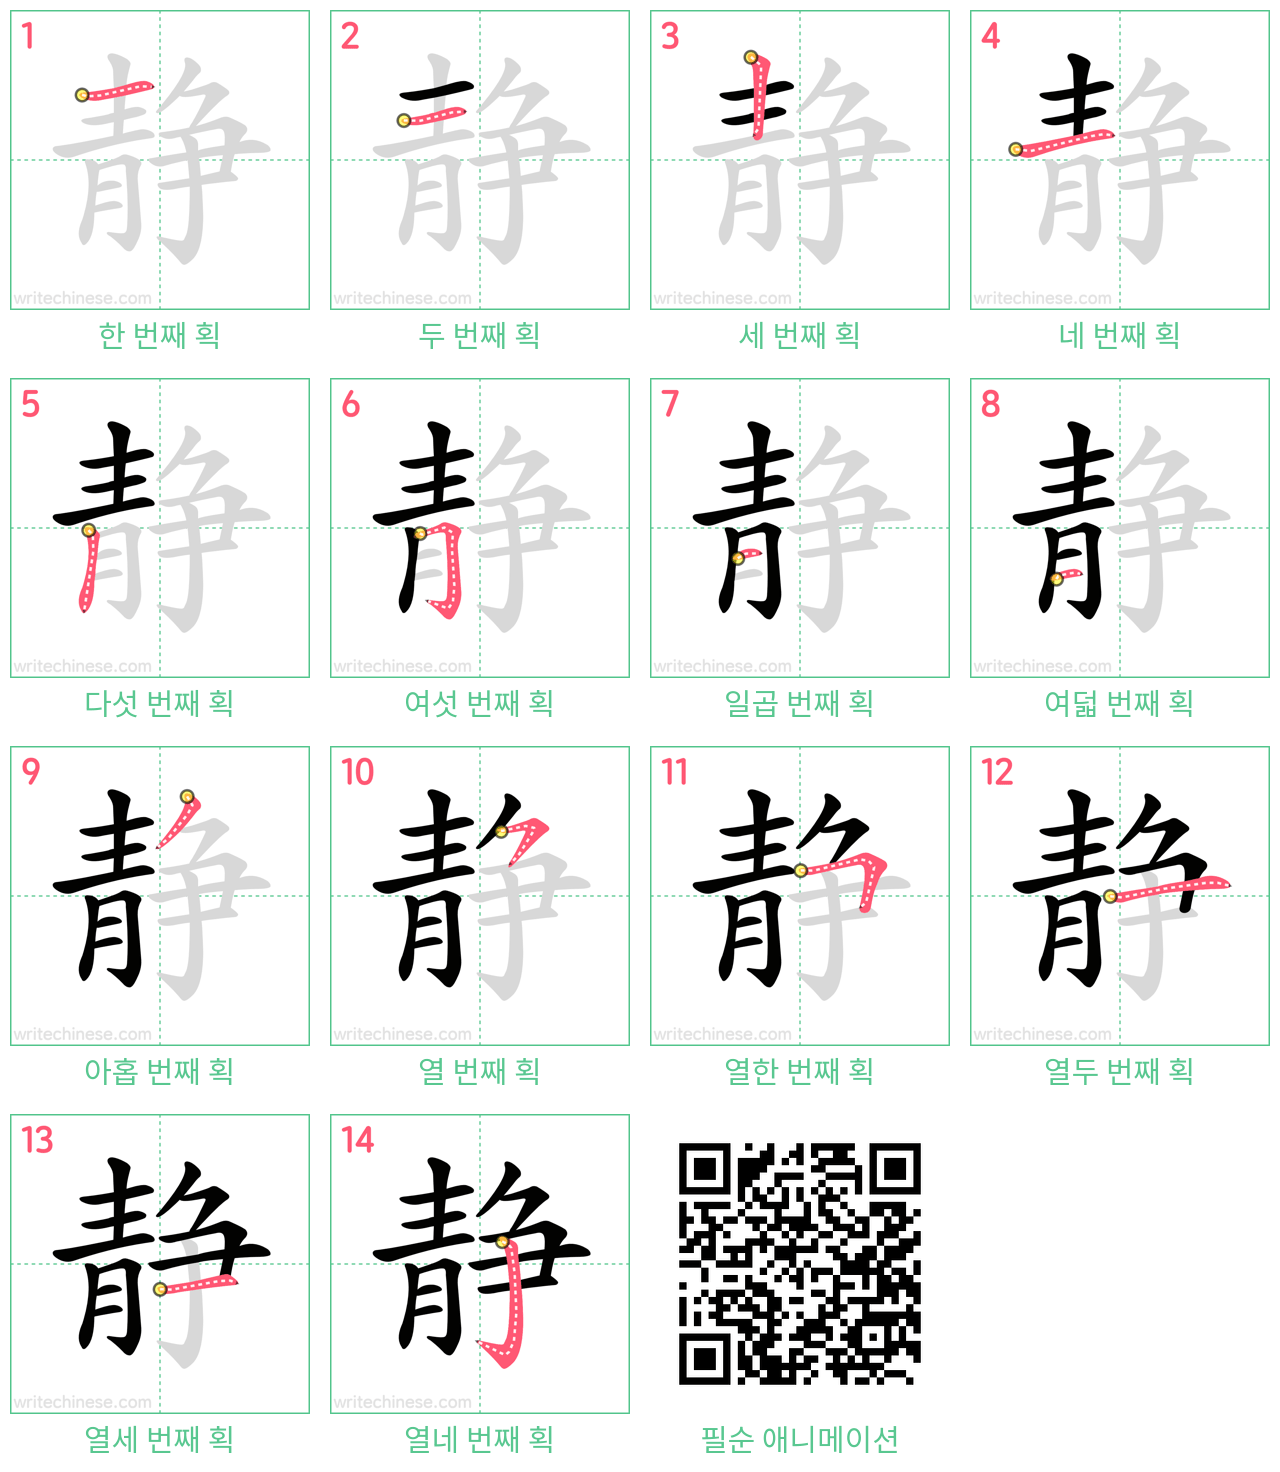 静 step-by-step stroke order diagrams